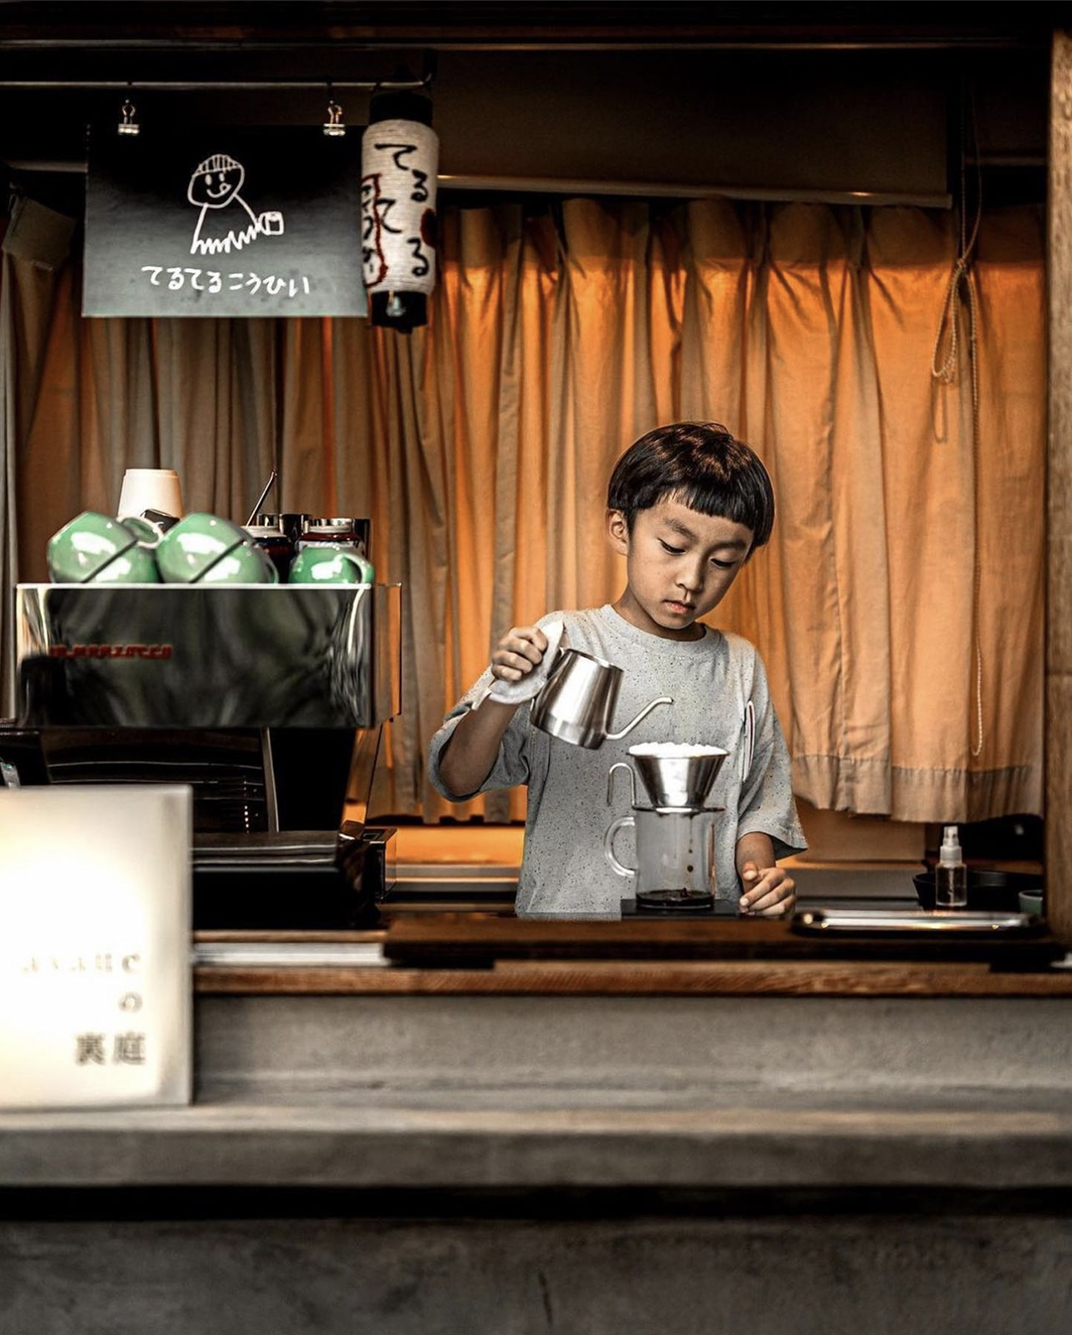 社区店复古咖啡馆 日本 上海 北京 广州 武汉 咖啡店 餐饮商业 logo设计 vi设计 空间设计